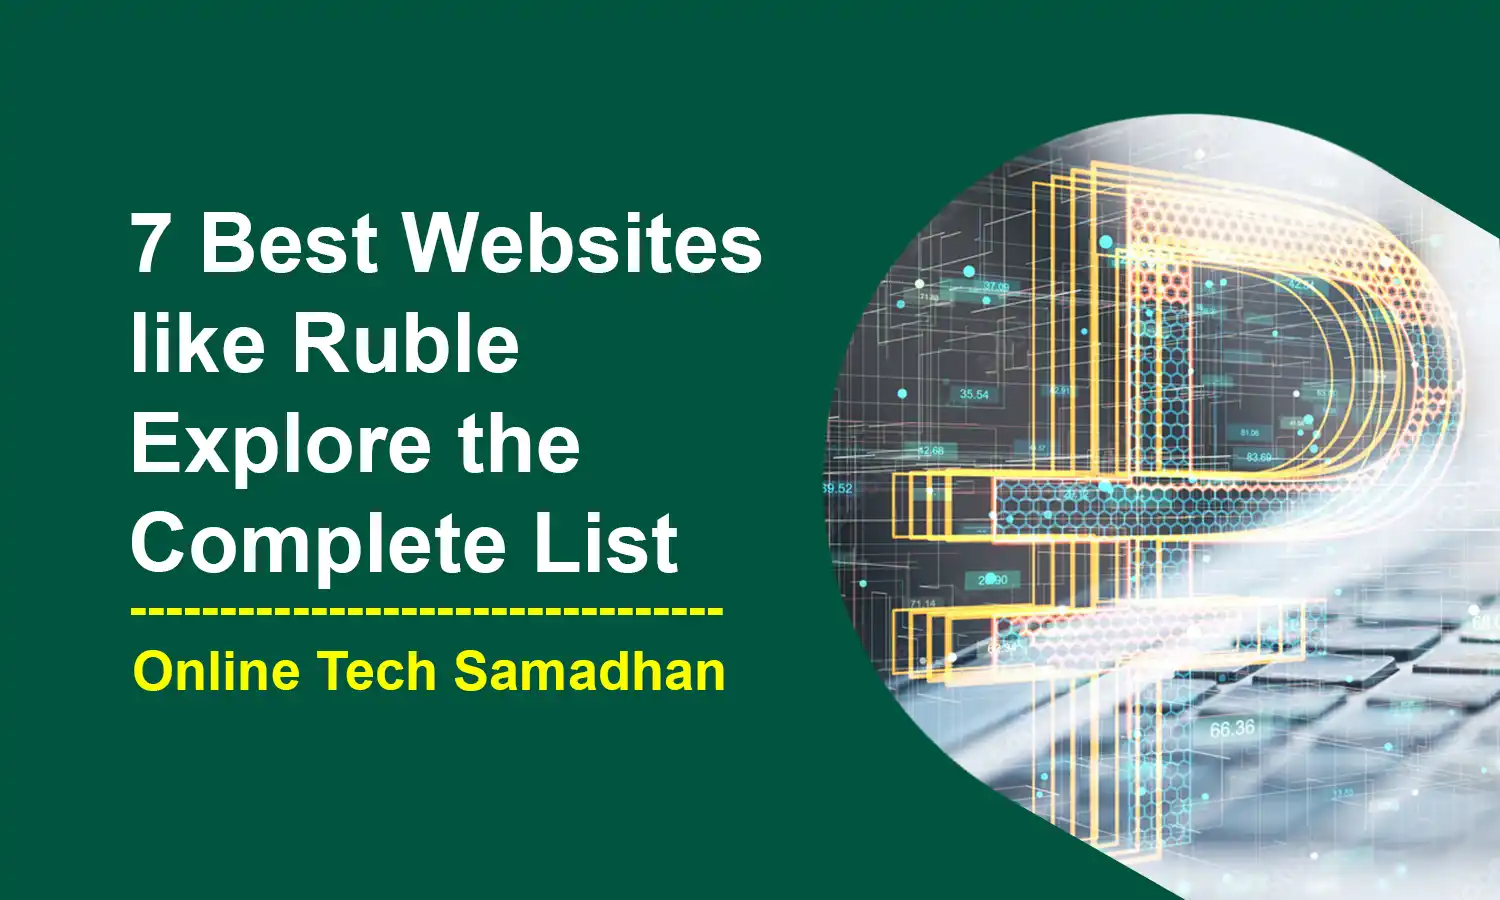 Websites like Ruble